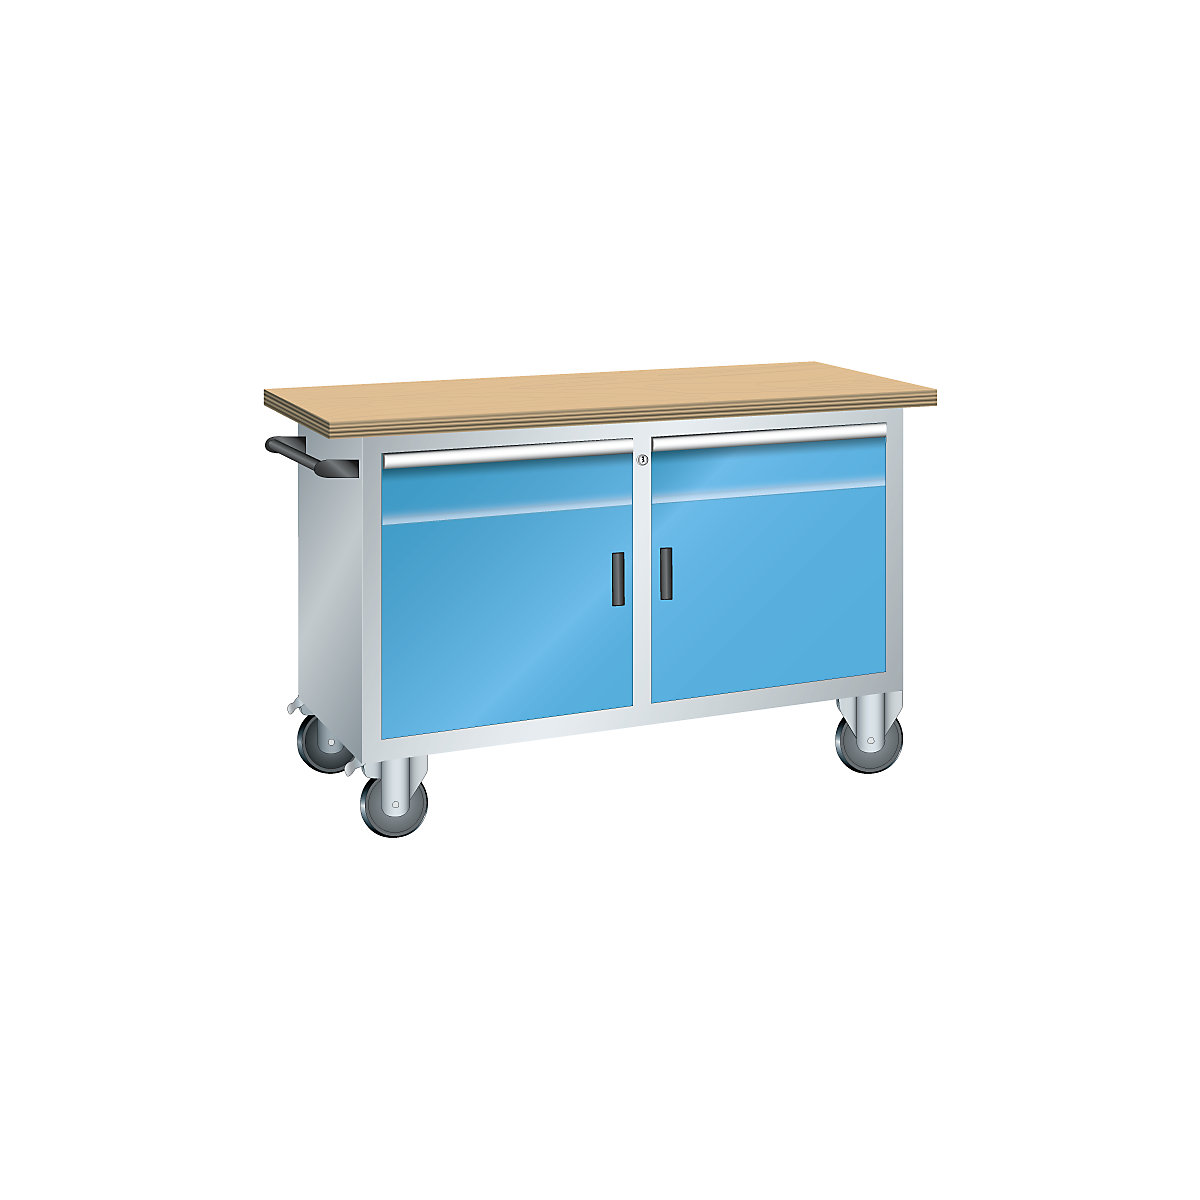 Établi compact mobile – LISTA, 2 tiroirs, 2 portes, 2 tablettes, coloris corps gris clair, coloris façades bleu clair-2